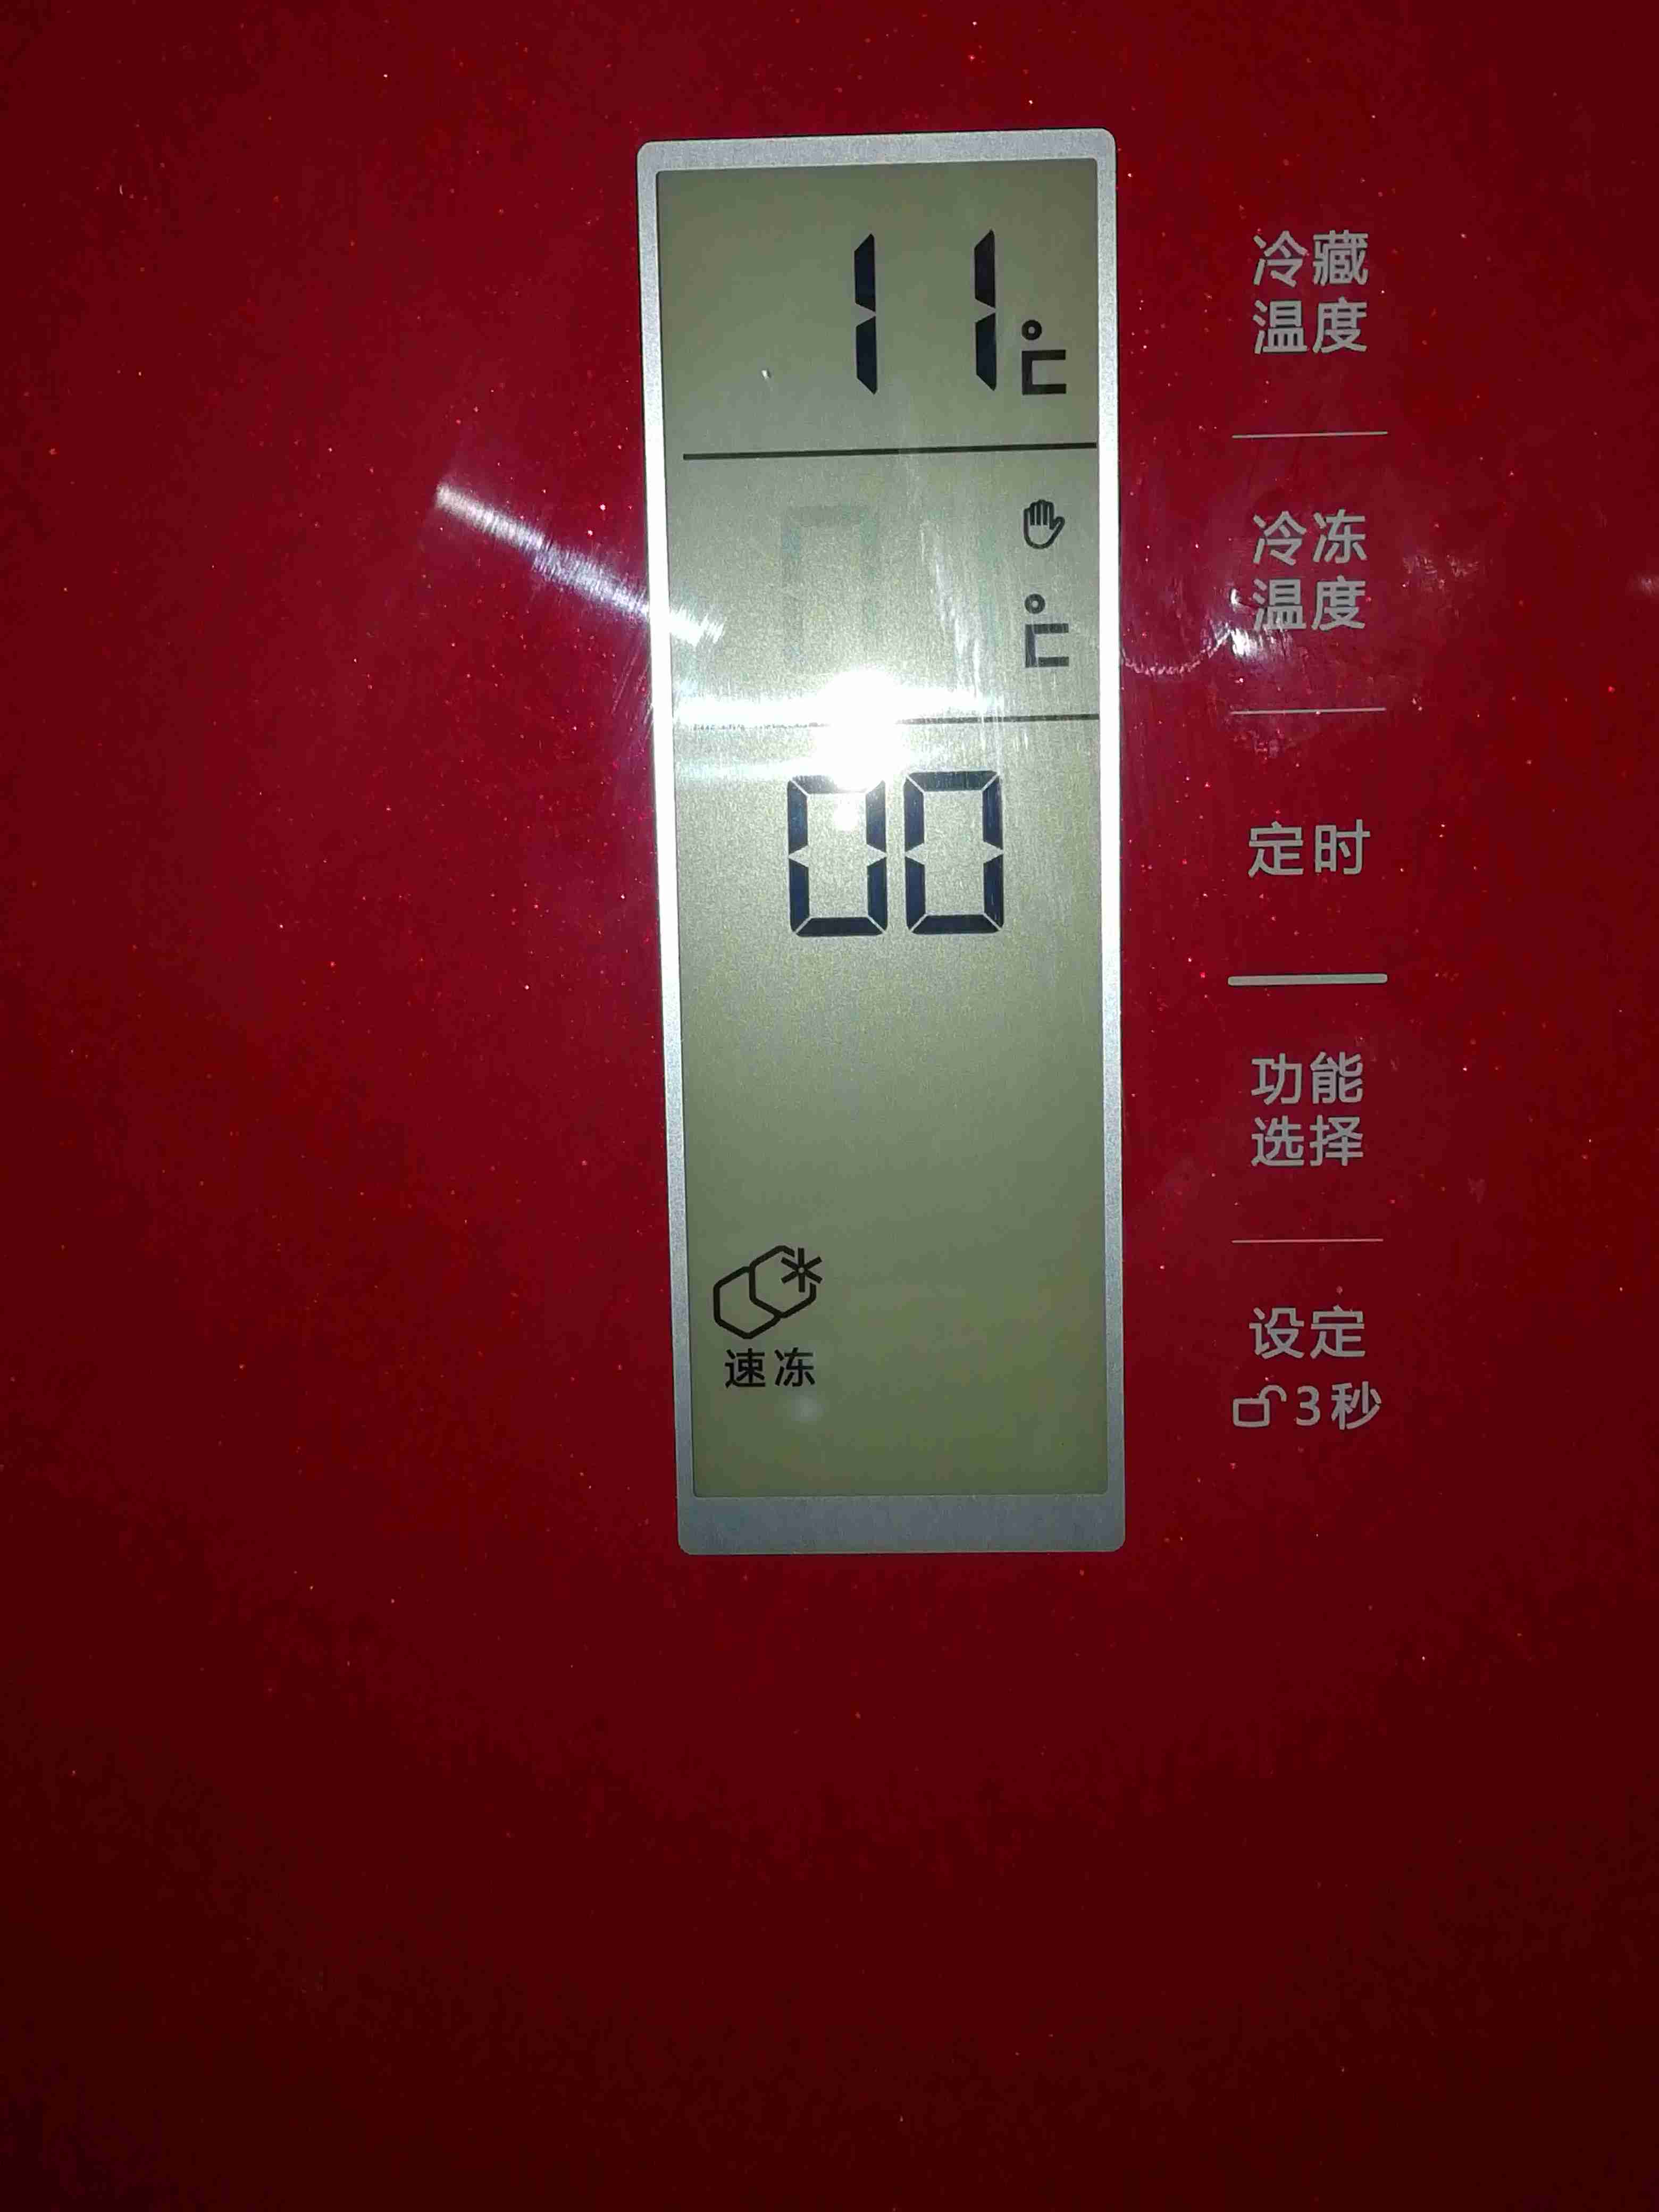 这款冰箱怎么调温度。